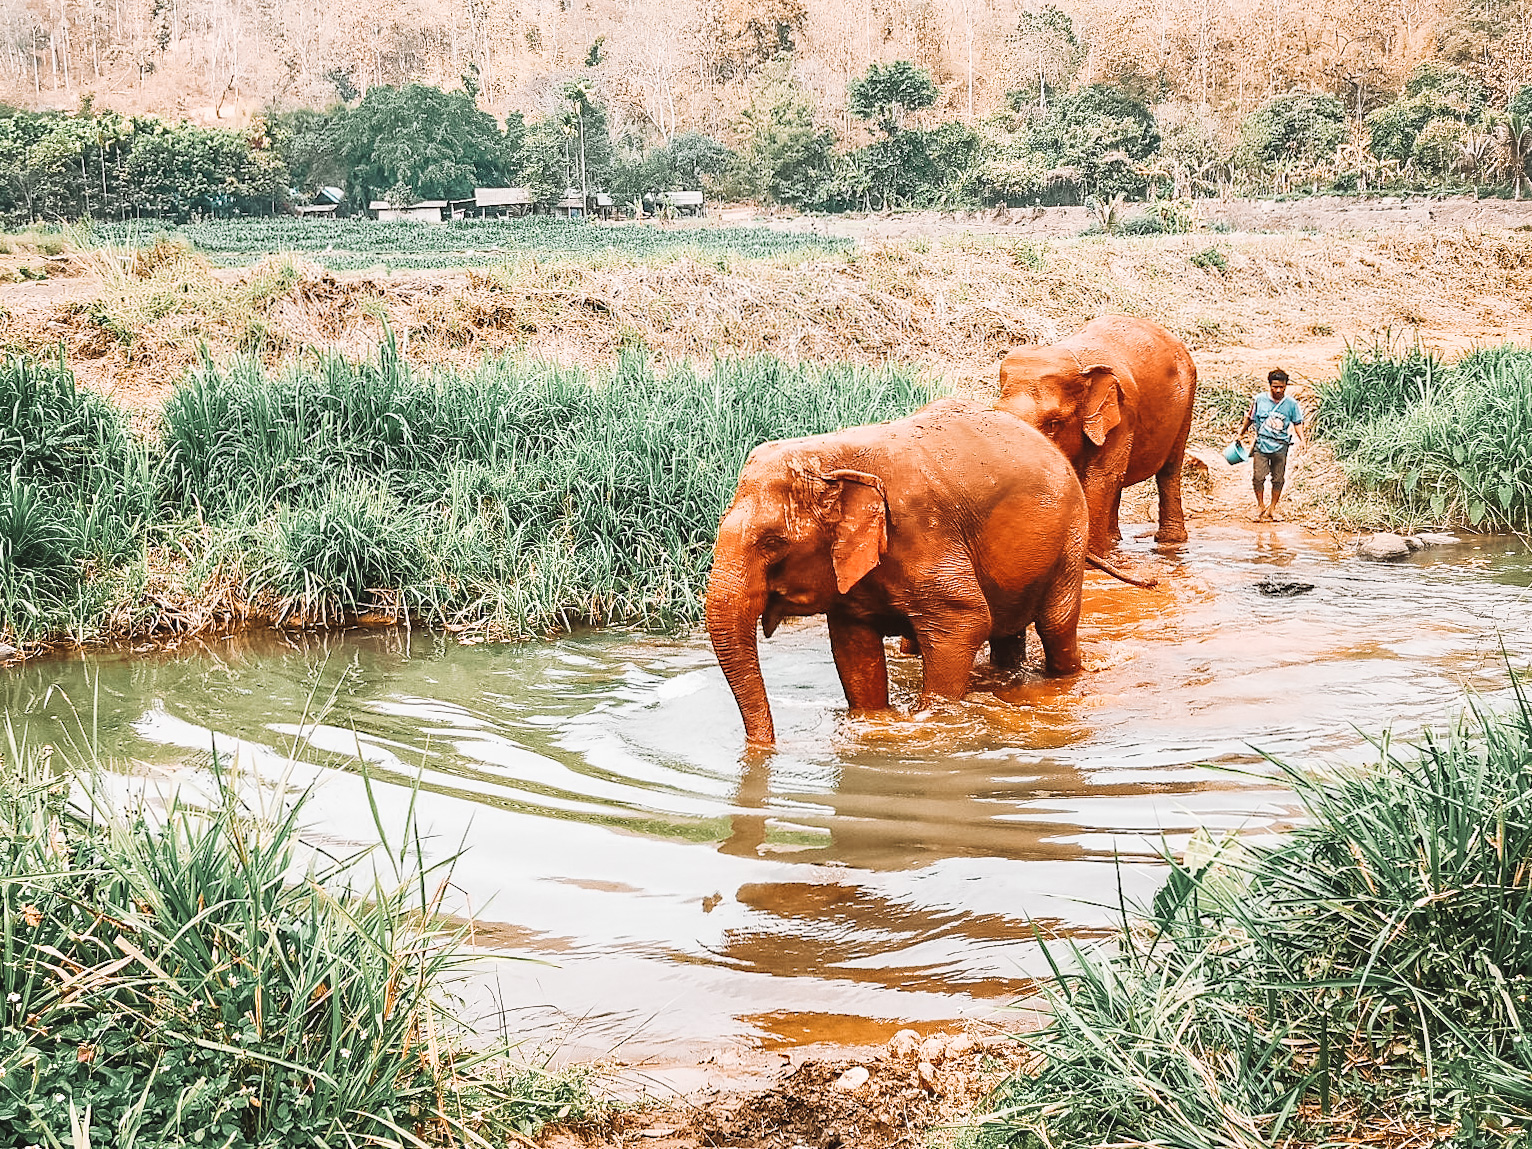 20200220-elephant-nature-park-chiang-mai-thailand-elephant-bathing